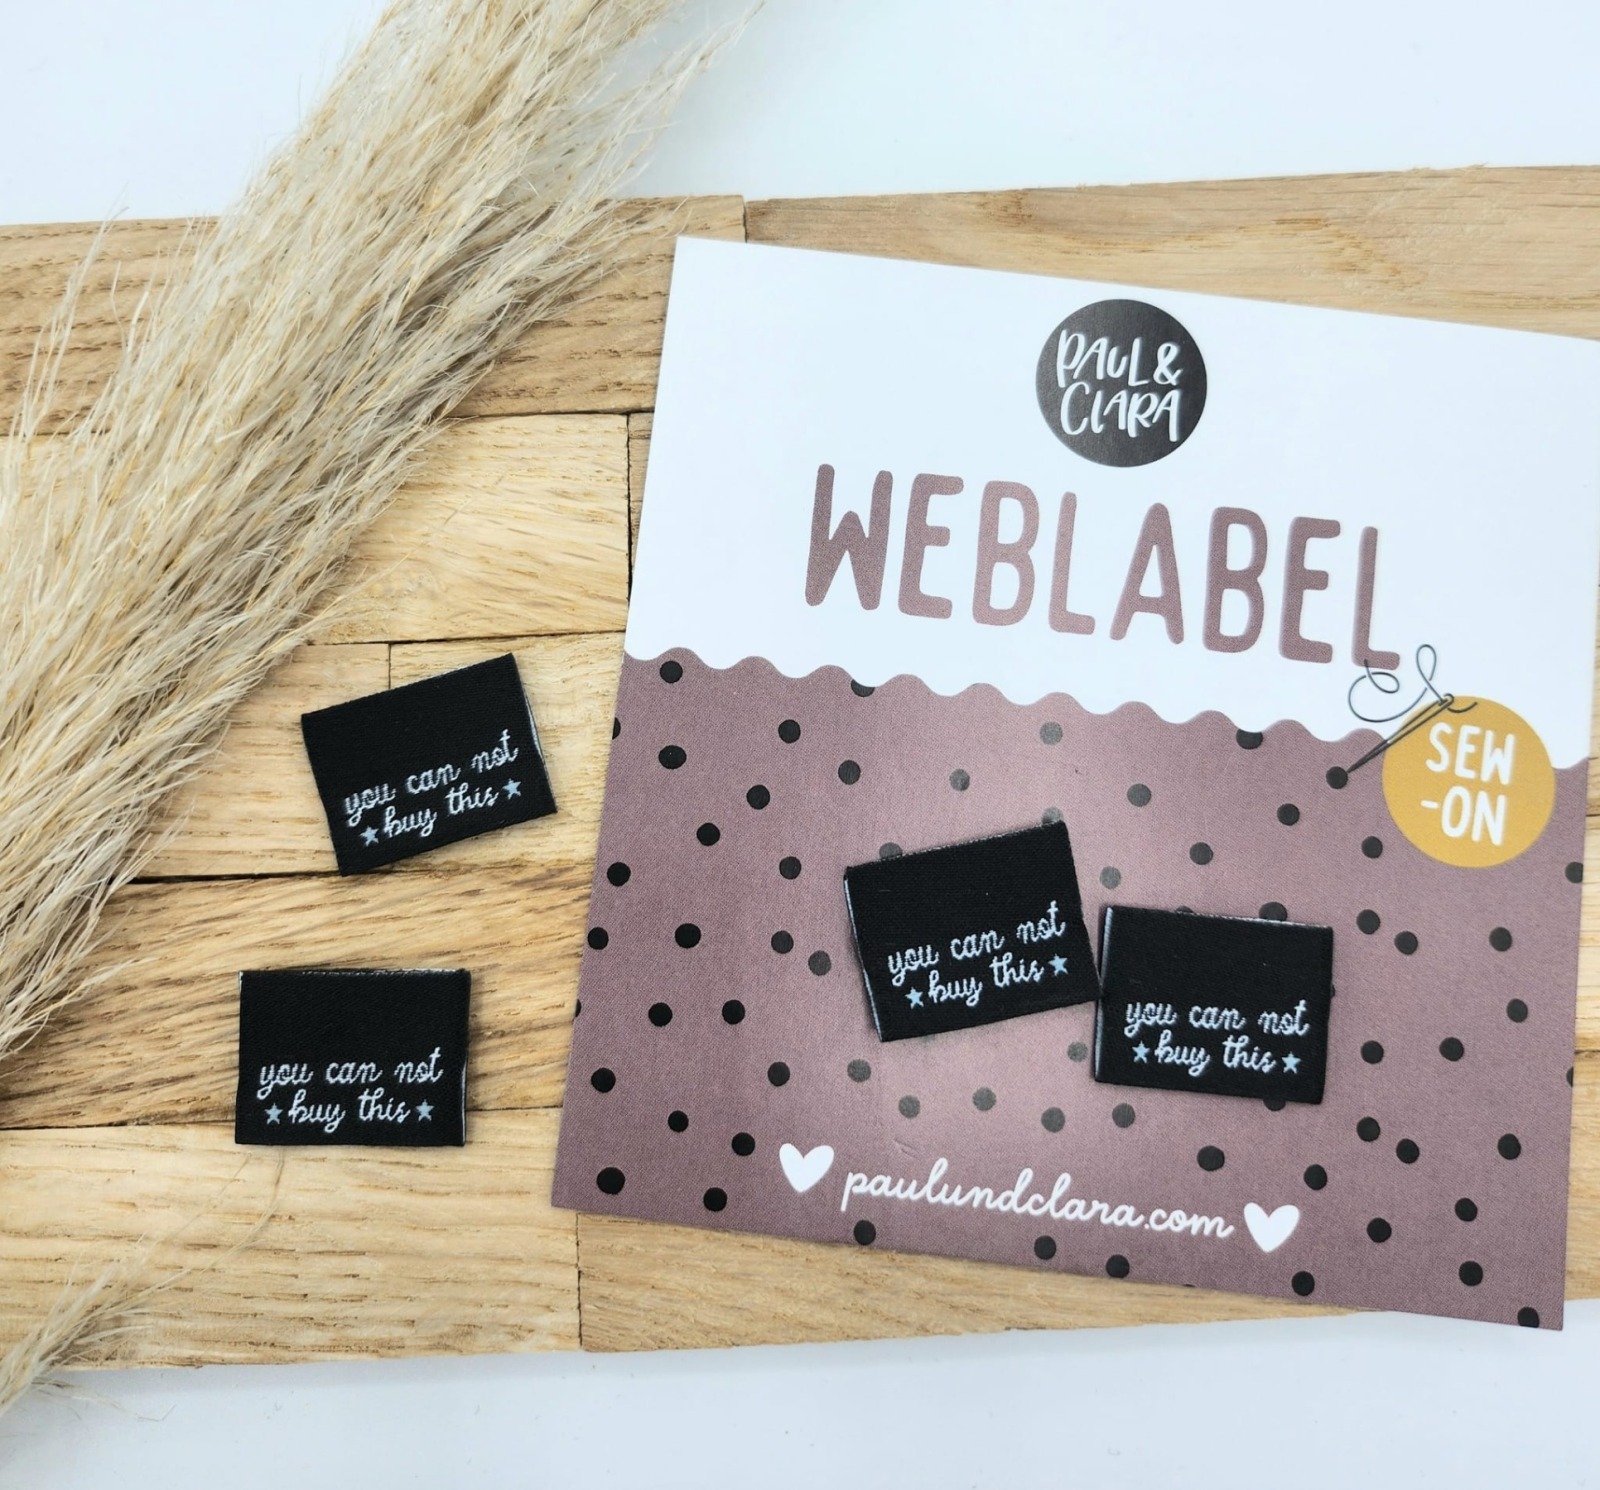 Klapp-Weblabel - you can not buy this schwarz -